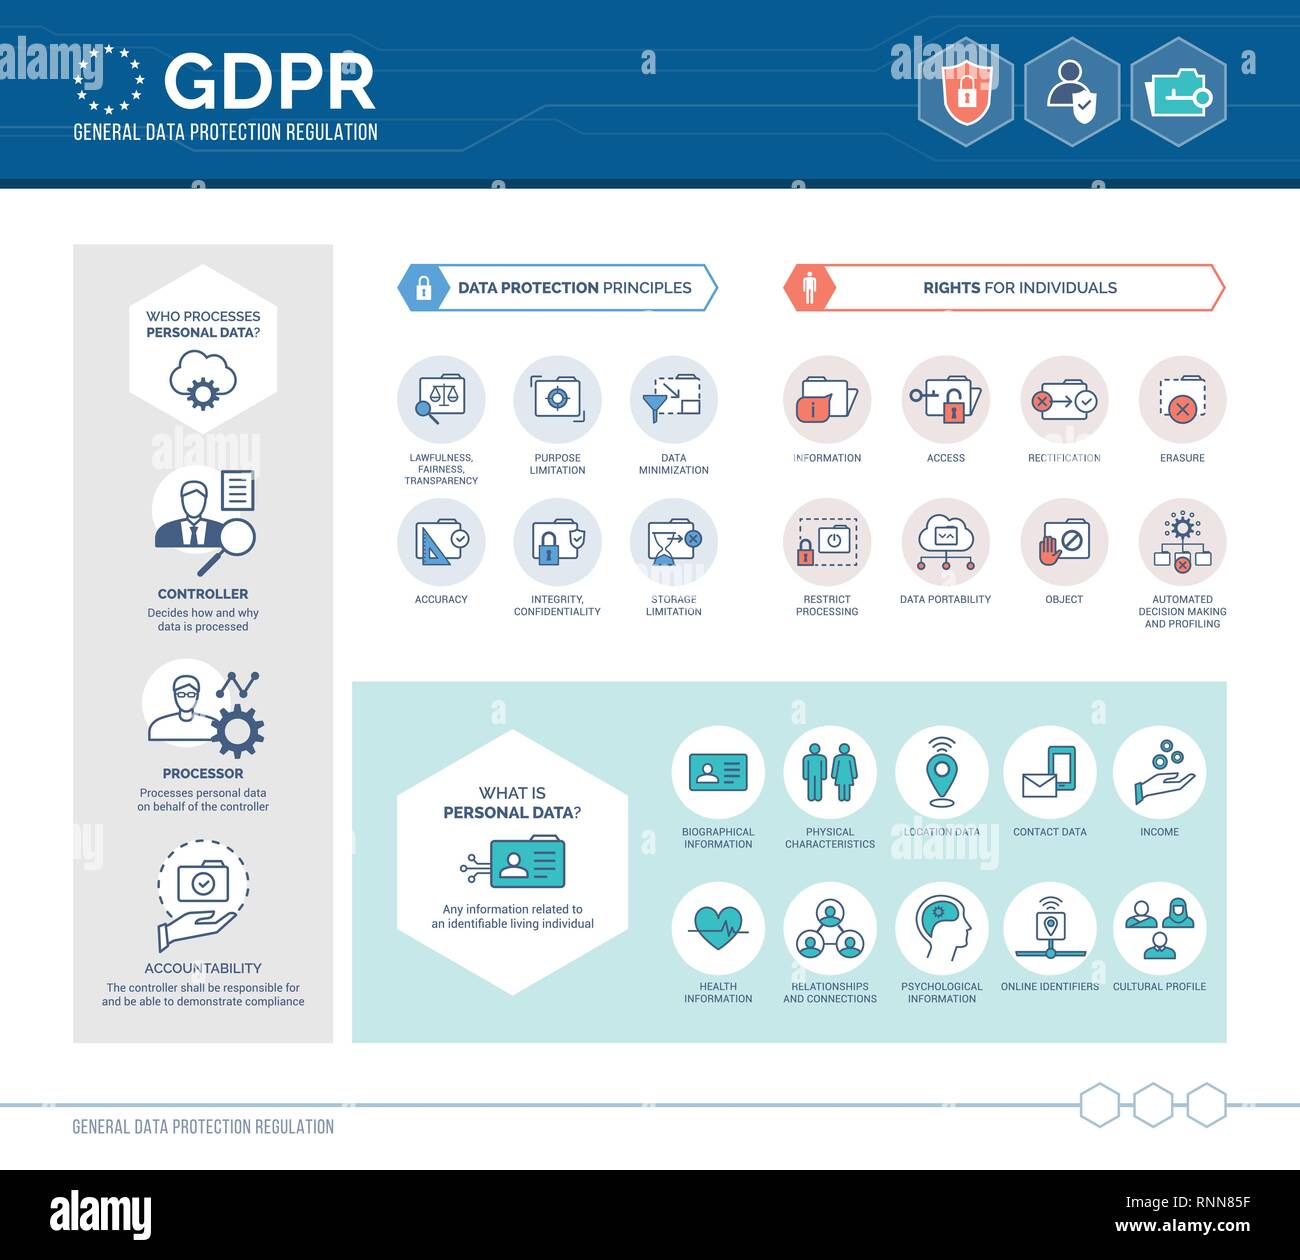 Reglamento general de protección de datos (GDPR) infográfico con iconos y texto, información personal, seguridad y privacidad del usuario concepto Ilustración del Vector